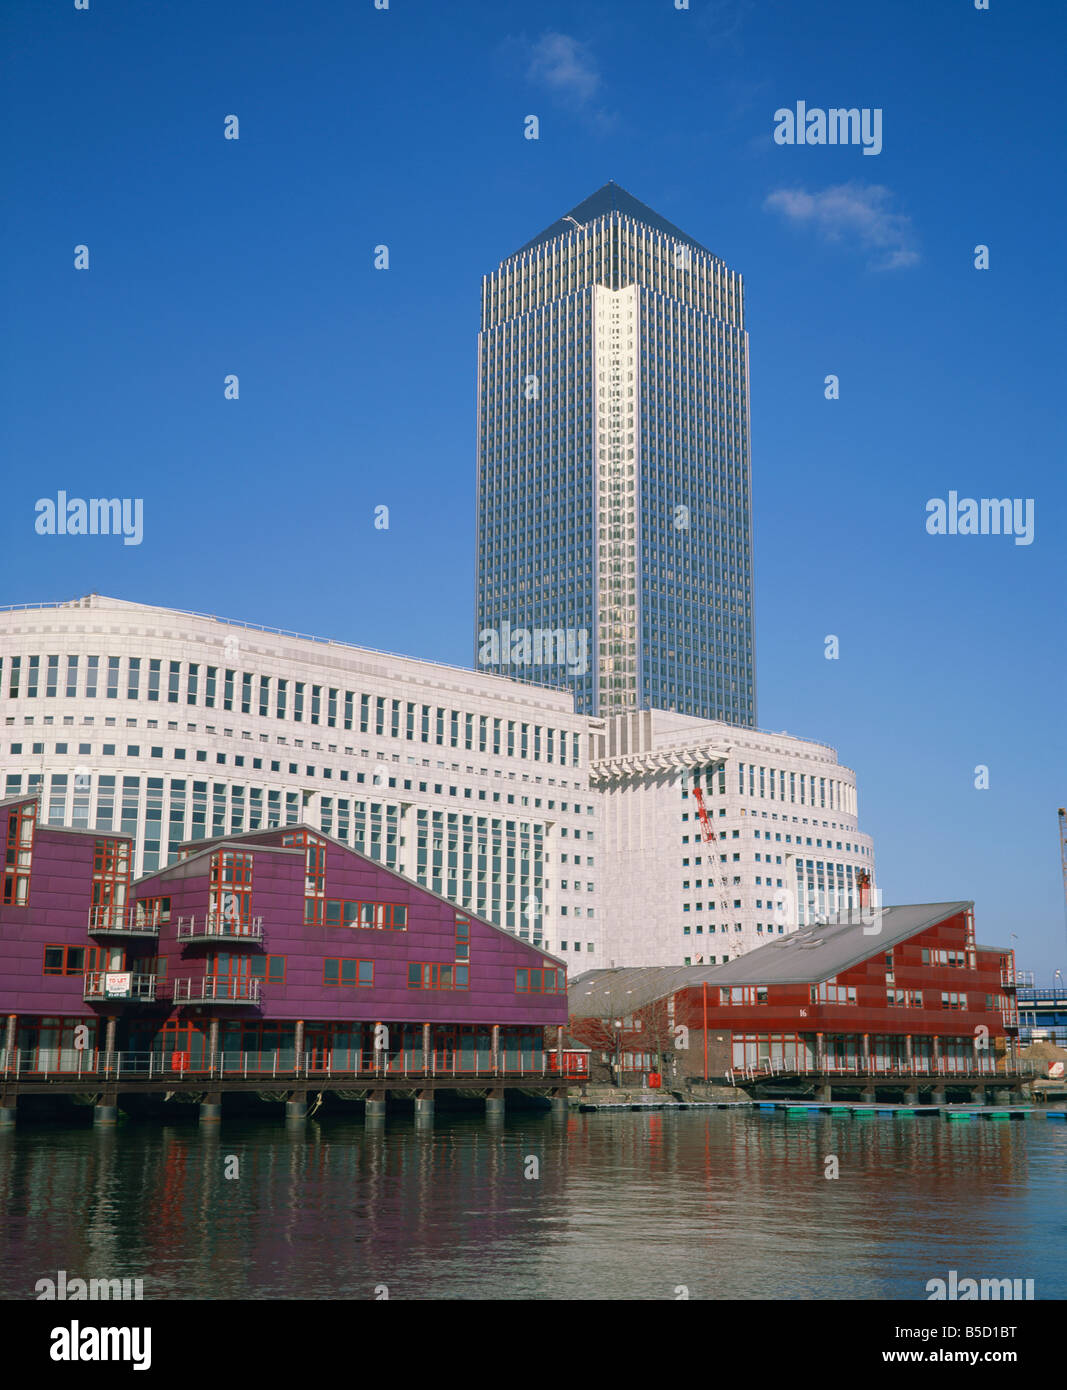 Canary Wharf et de l'architecture moderne Docklands Londres Angleterre Royaume-uni R Rainford Banque D'Images